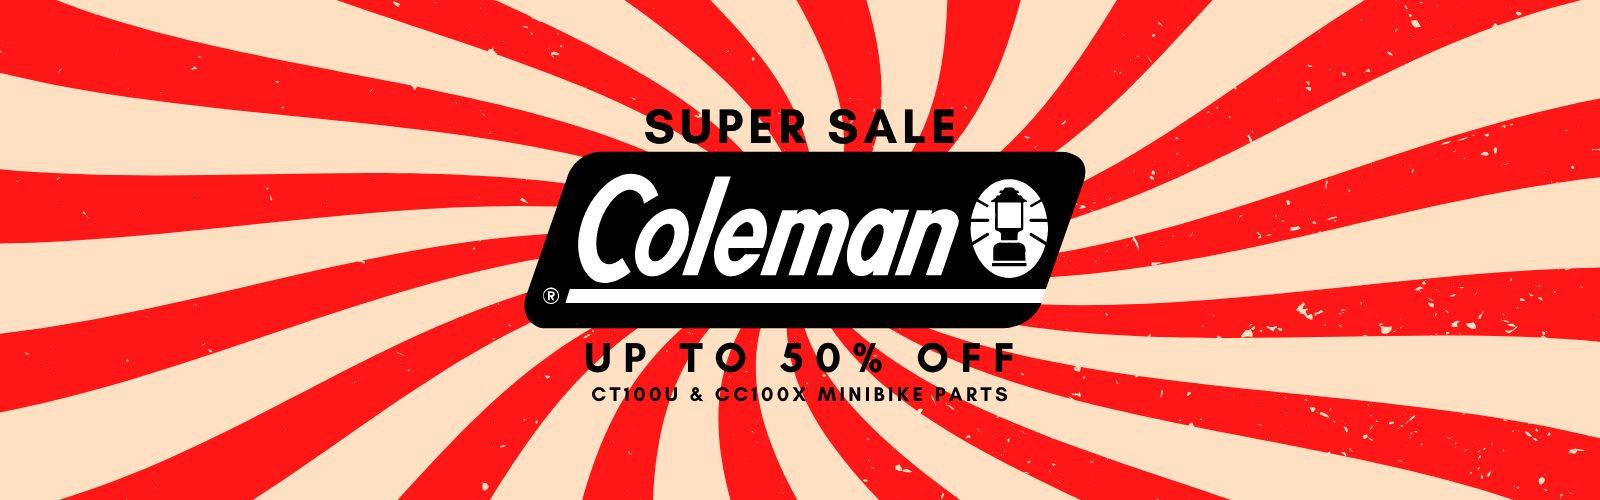 Coleman Minibike Parts Specials